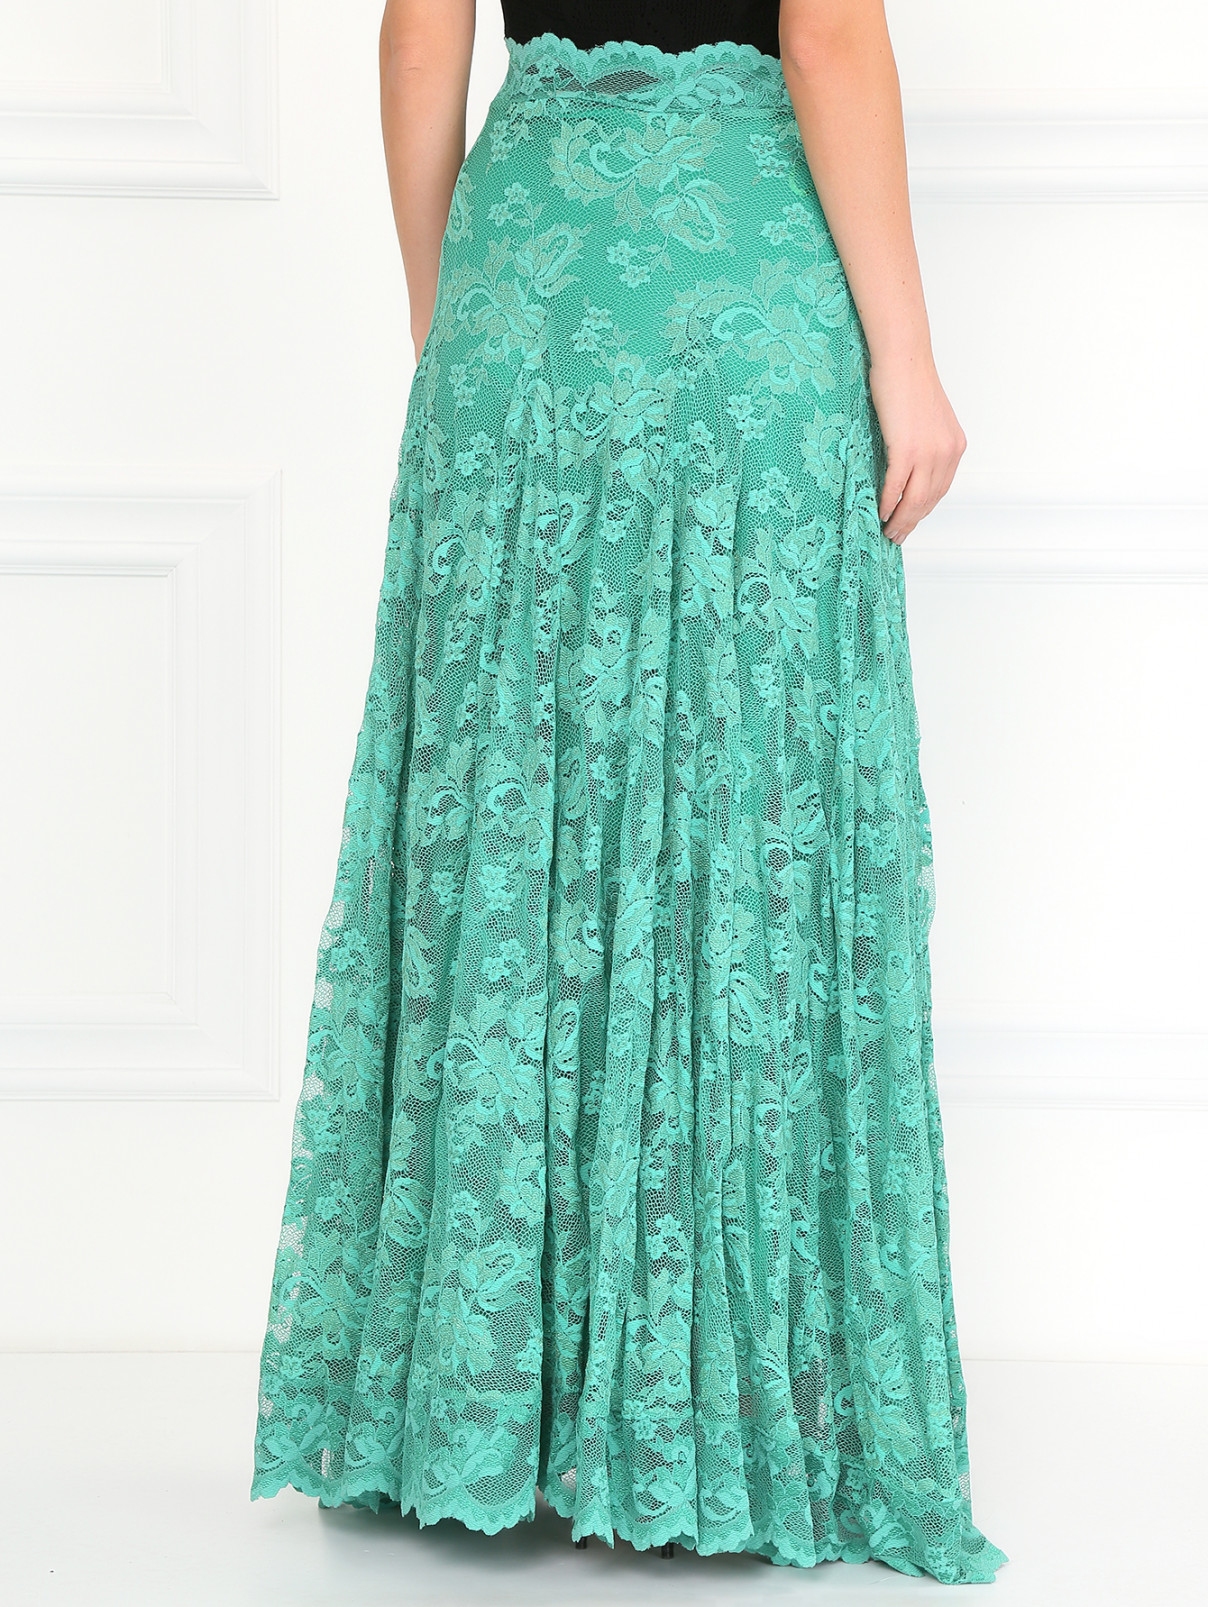 Кружевная юбка-макси Olvi's  –  Модель Верх-Низ1  – Цвет:  Зеленый